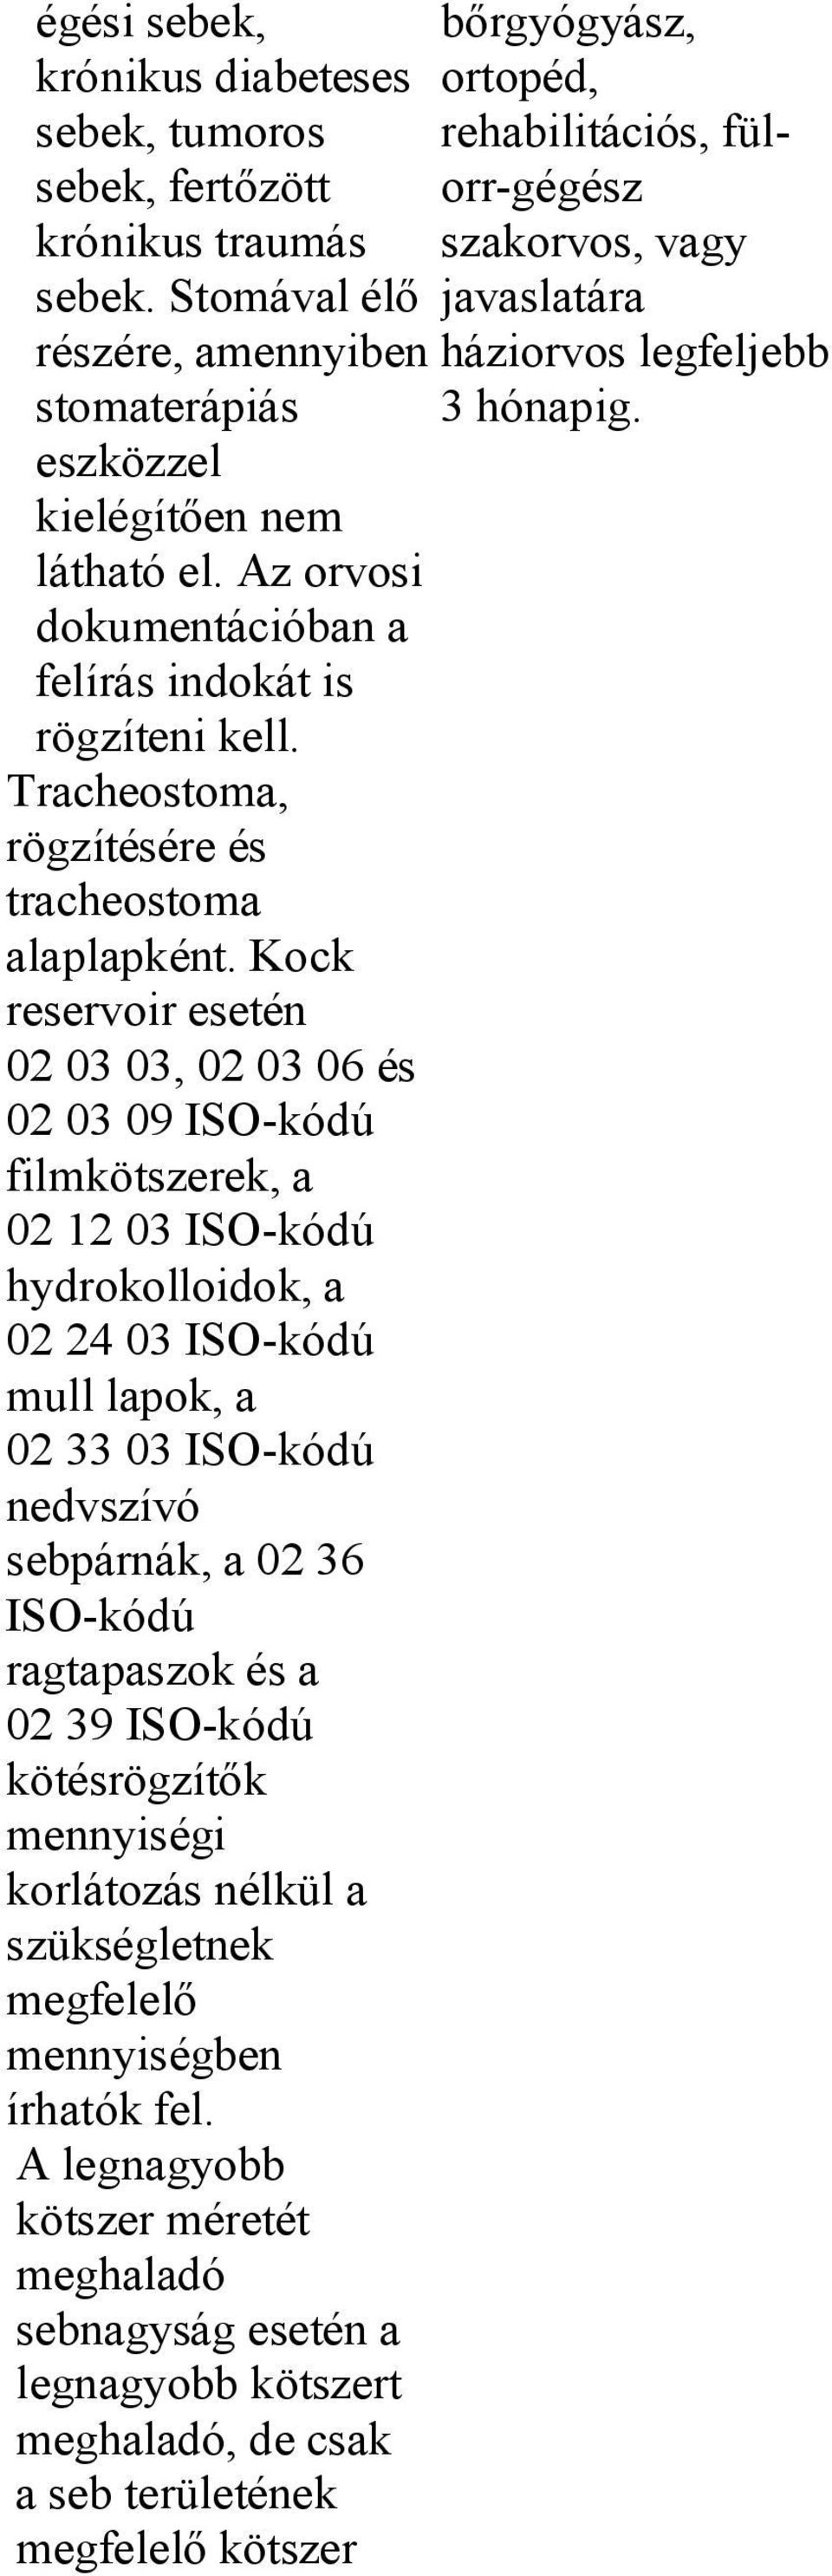 Kock reservoir esetén 02 03 03, 02 03 06 és 02 03 09 ISO-kódú filmkötszerek, a 02 12 03 ISO-kódú hydrokolloidok, a 02 24 03 ISO-kódú mull lapok, a 02 33 03 ISO-kódú nedvszívó sebpárnák, a 02 36